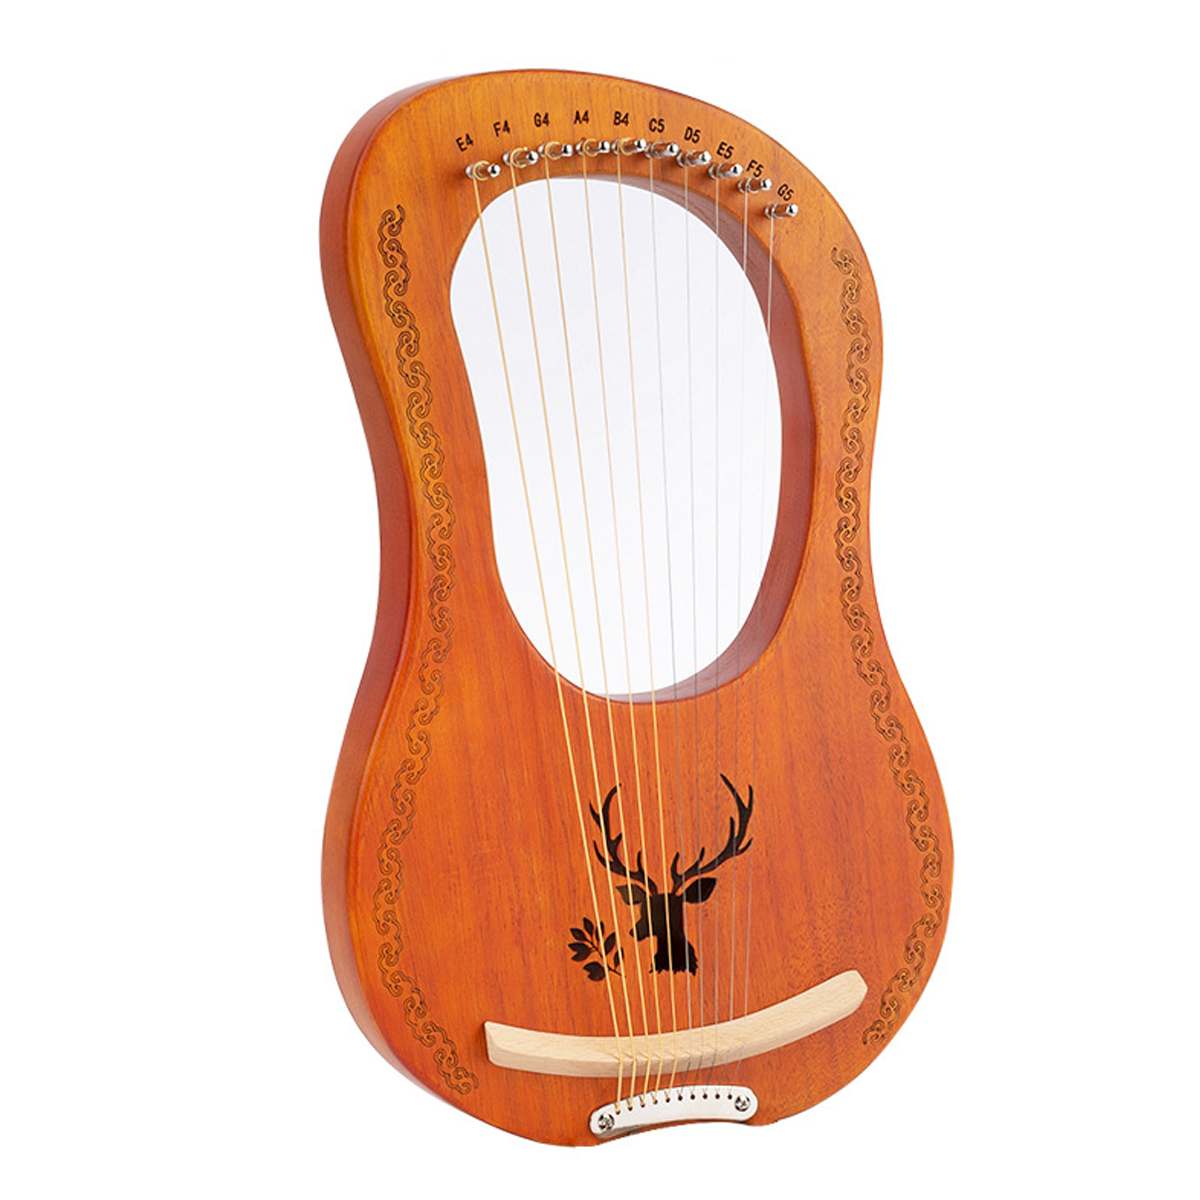 Træ mahogni 7 -strenget lyre harpe strenge musikinstrument med pickup tuning hammer rengøringsklud harpe instrument